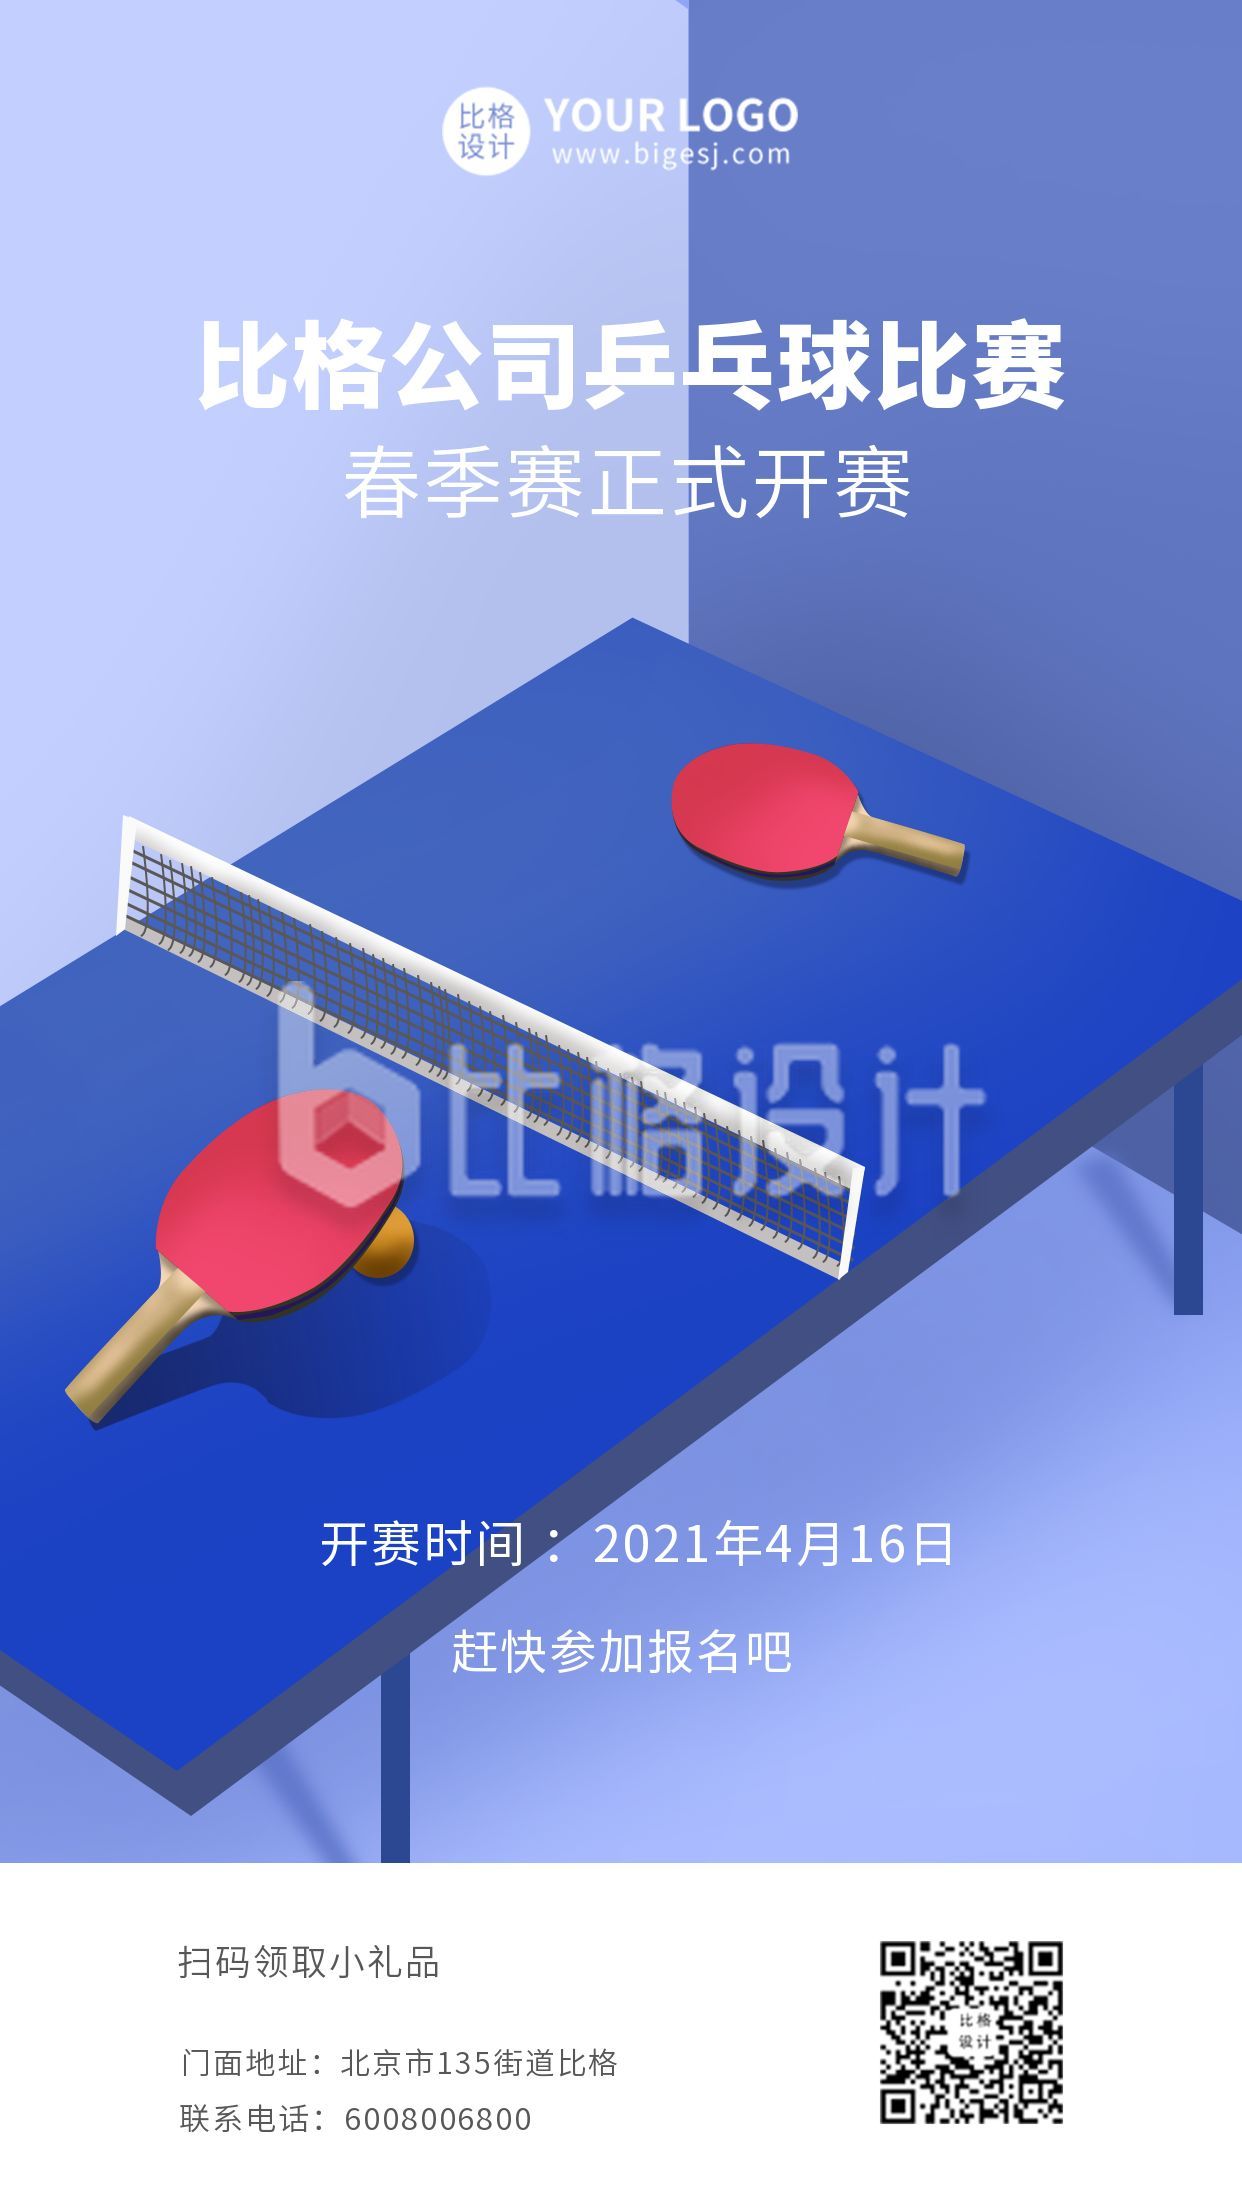 乒乓球比赛体育竞技手绘插画海报